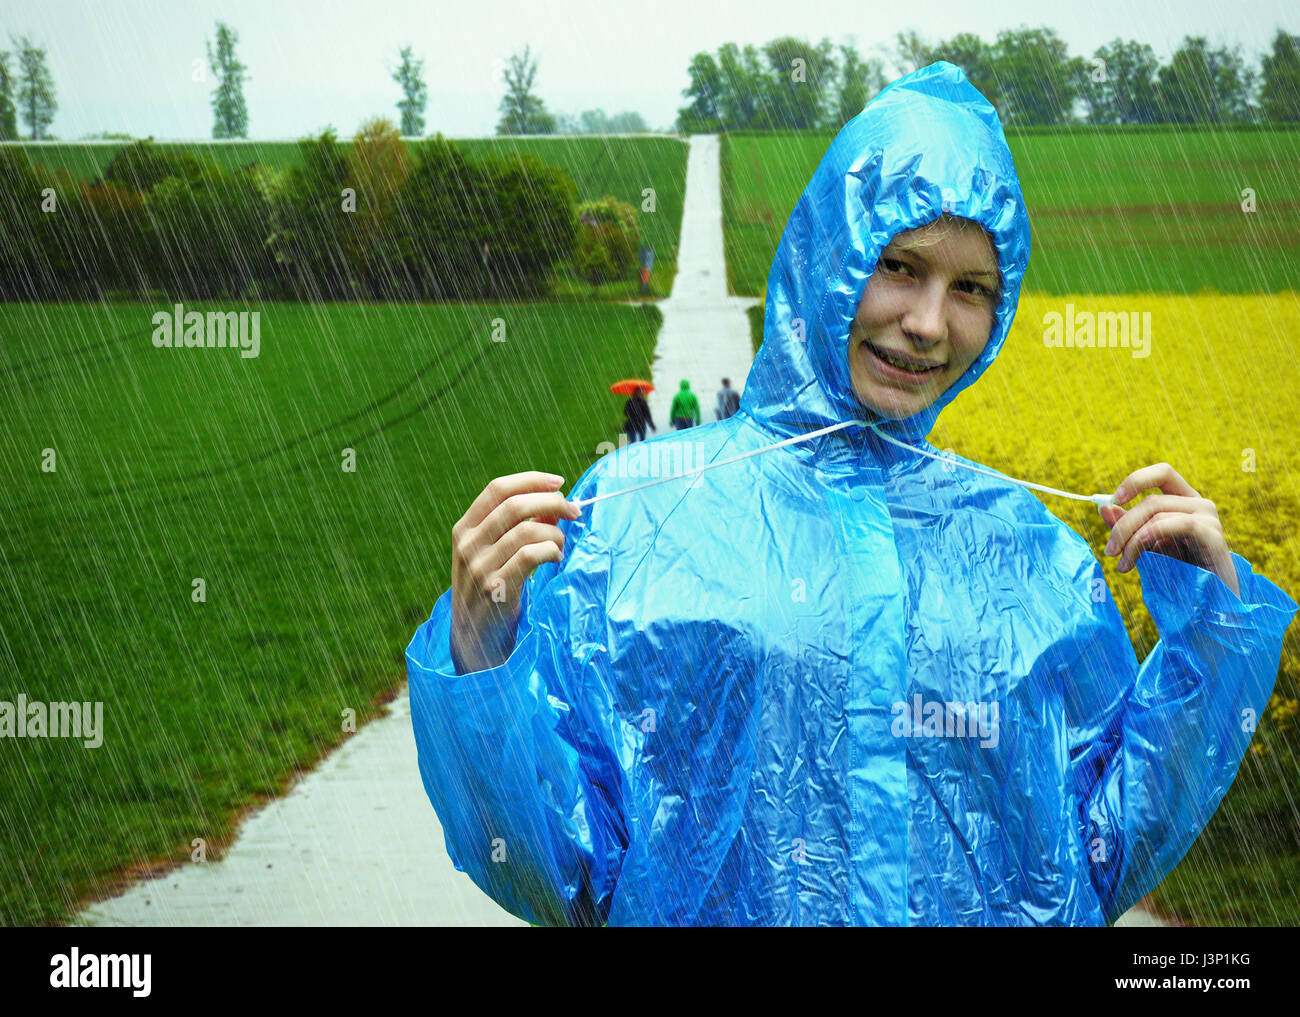 Happy girl on a rainy day Stock Photo